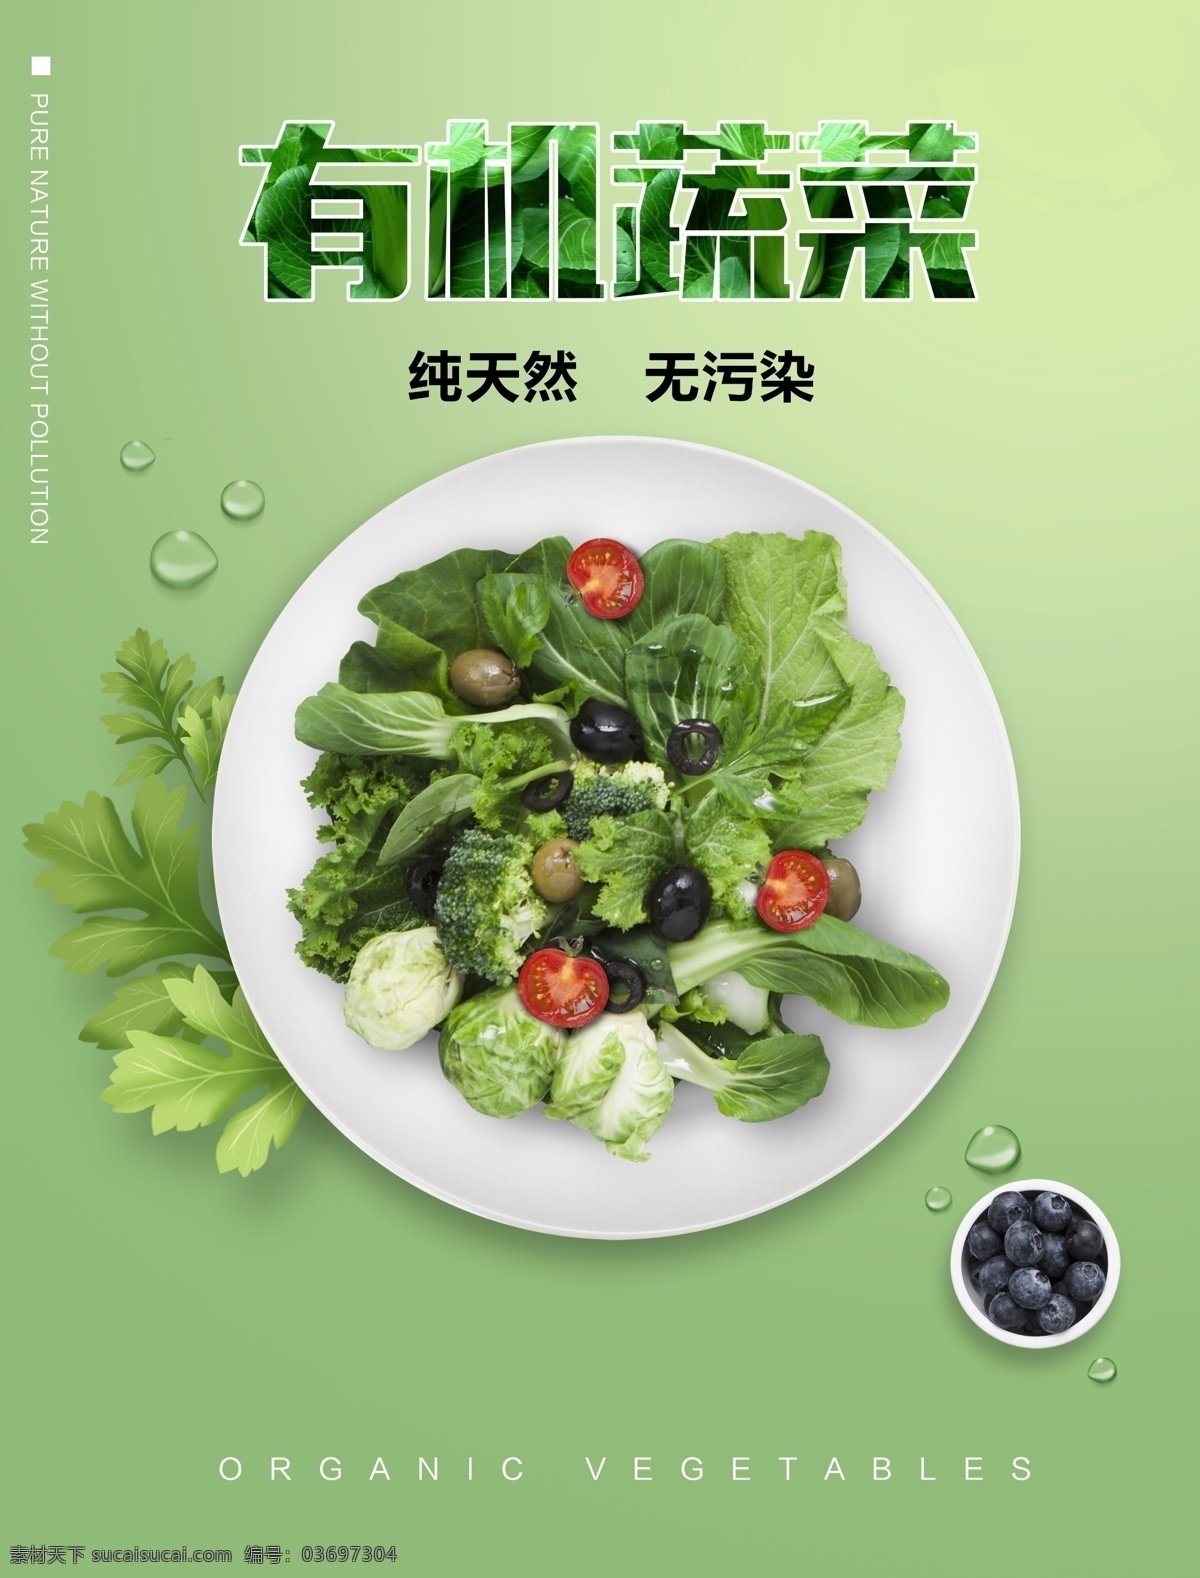 有机 蔬菜 分层 海报 有机蔬菜 蔬菜分层 绿色海报 健康